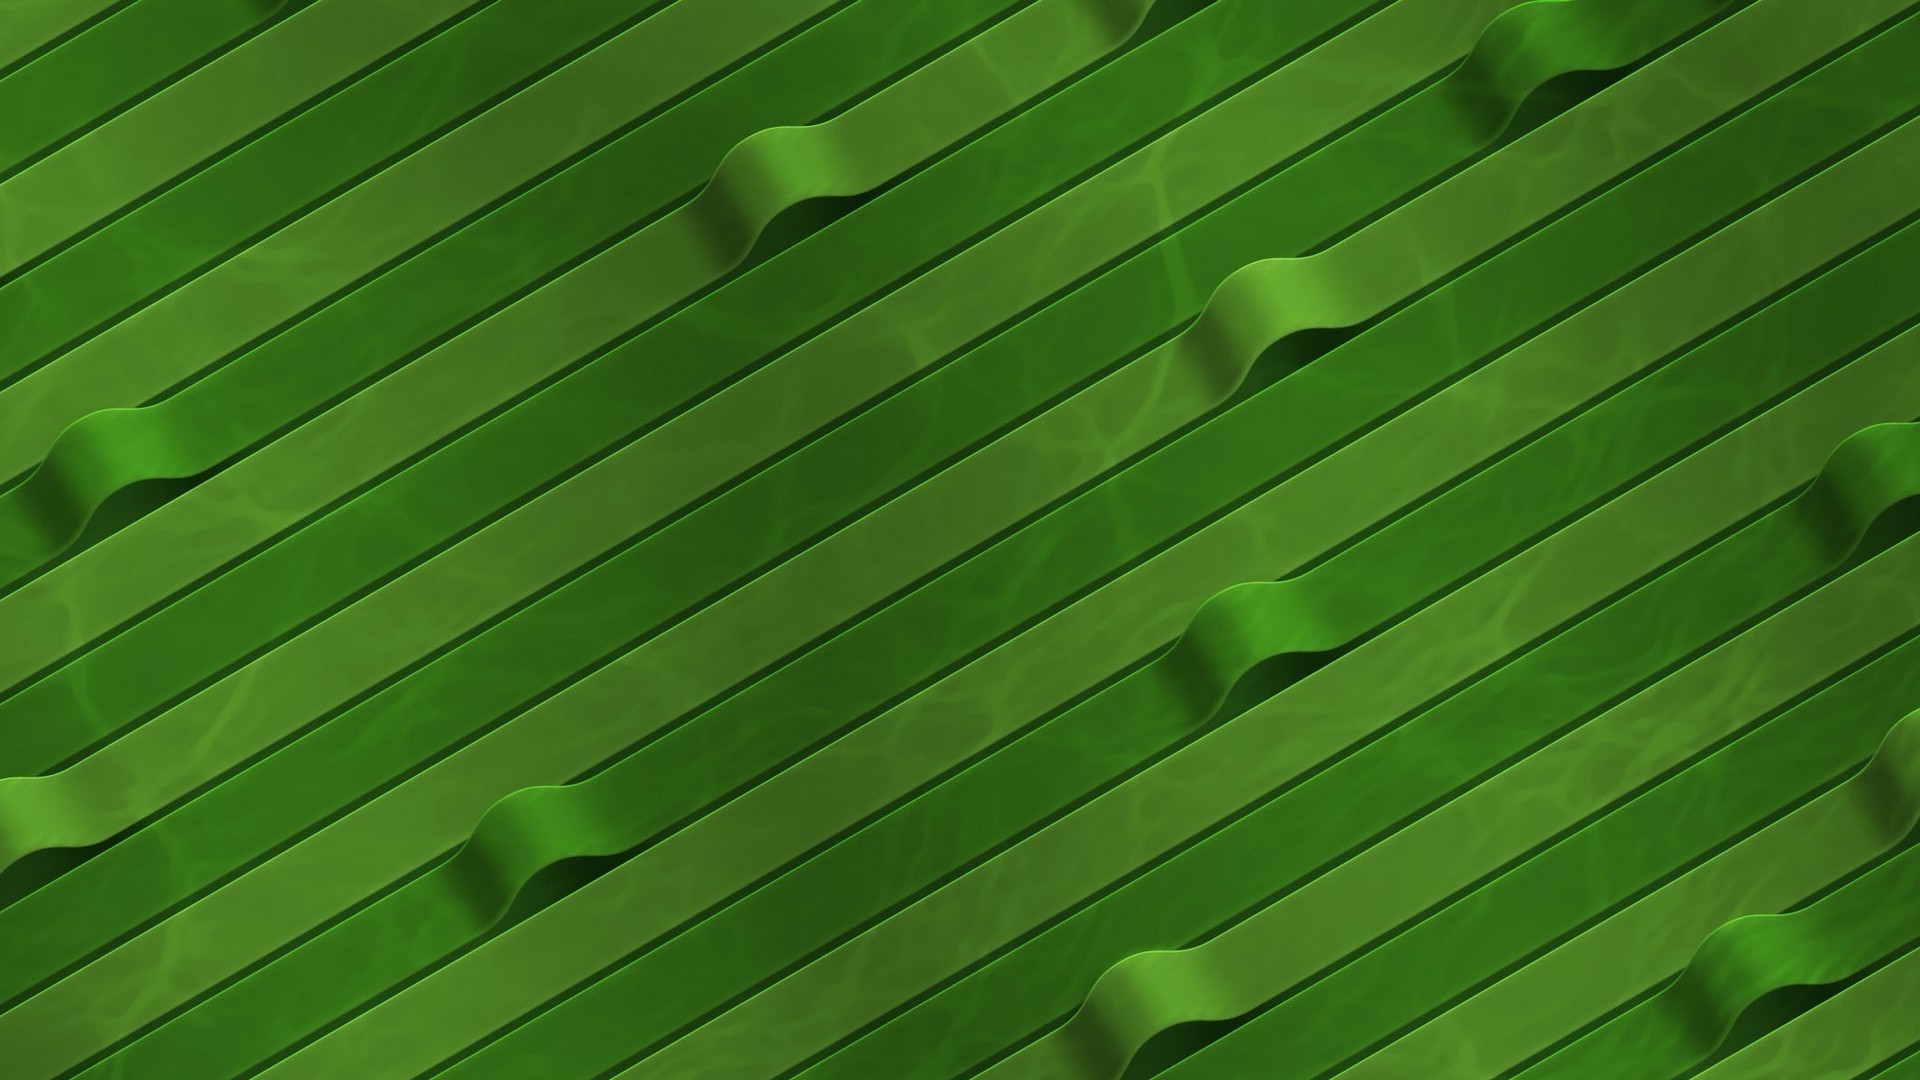 General 1920x1080 digital art green CGI texture lines